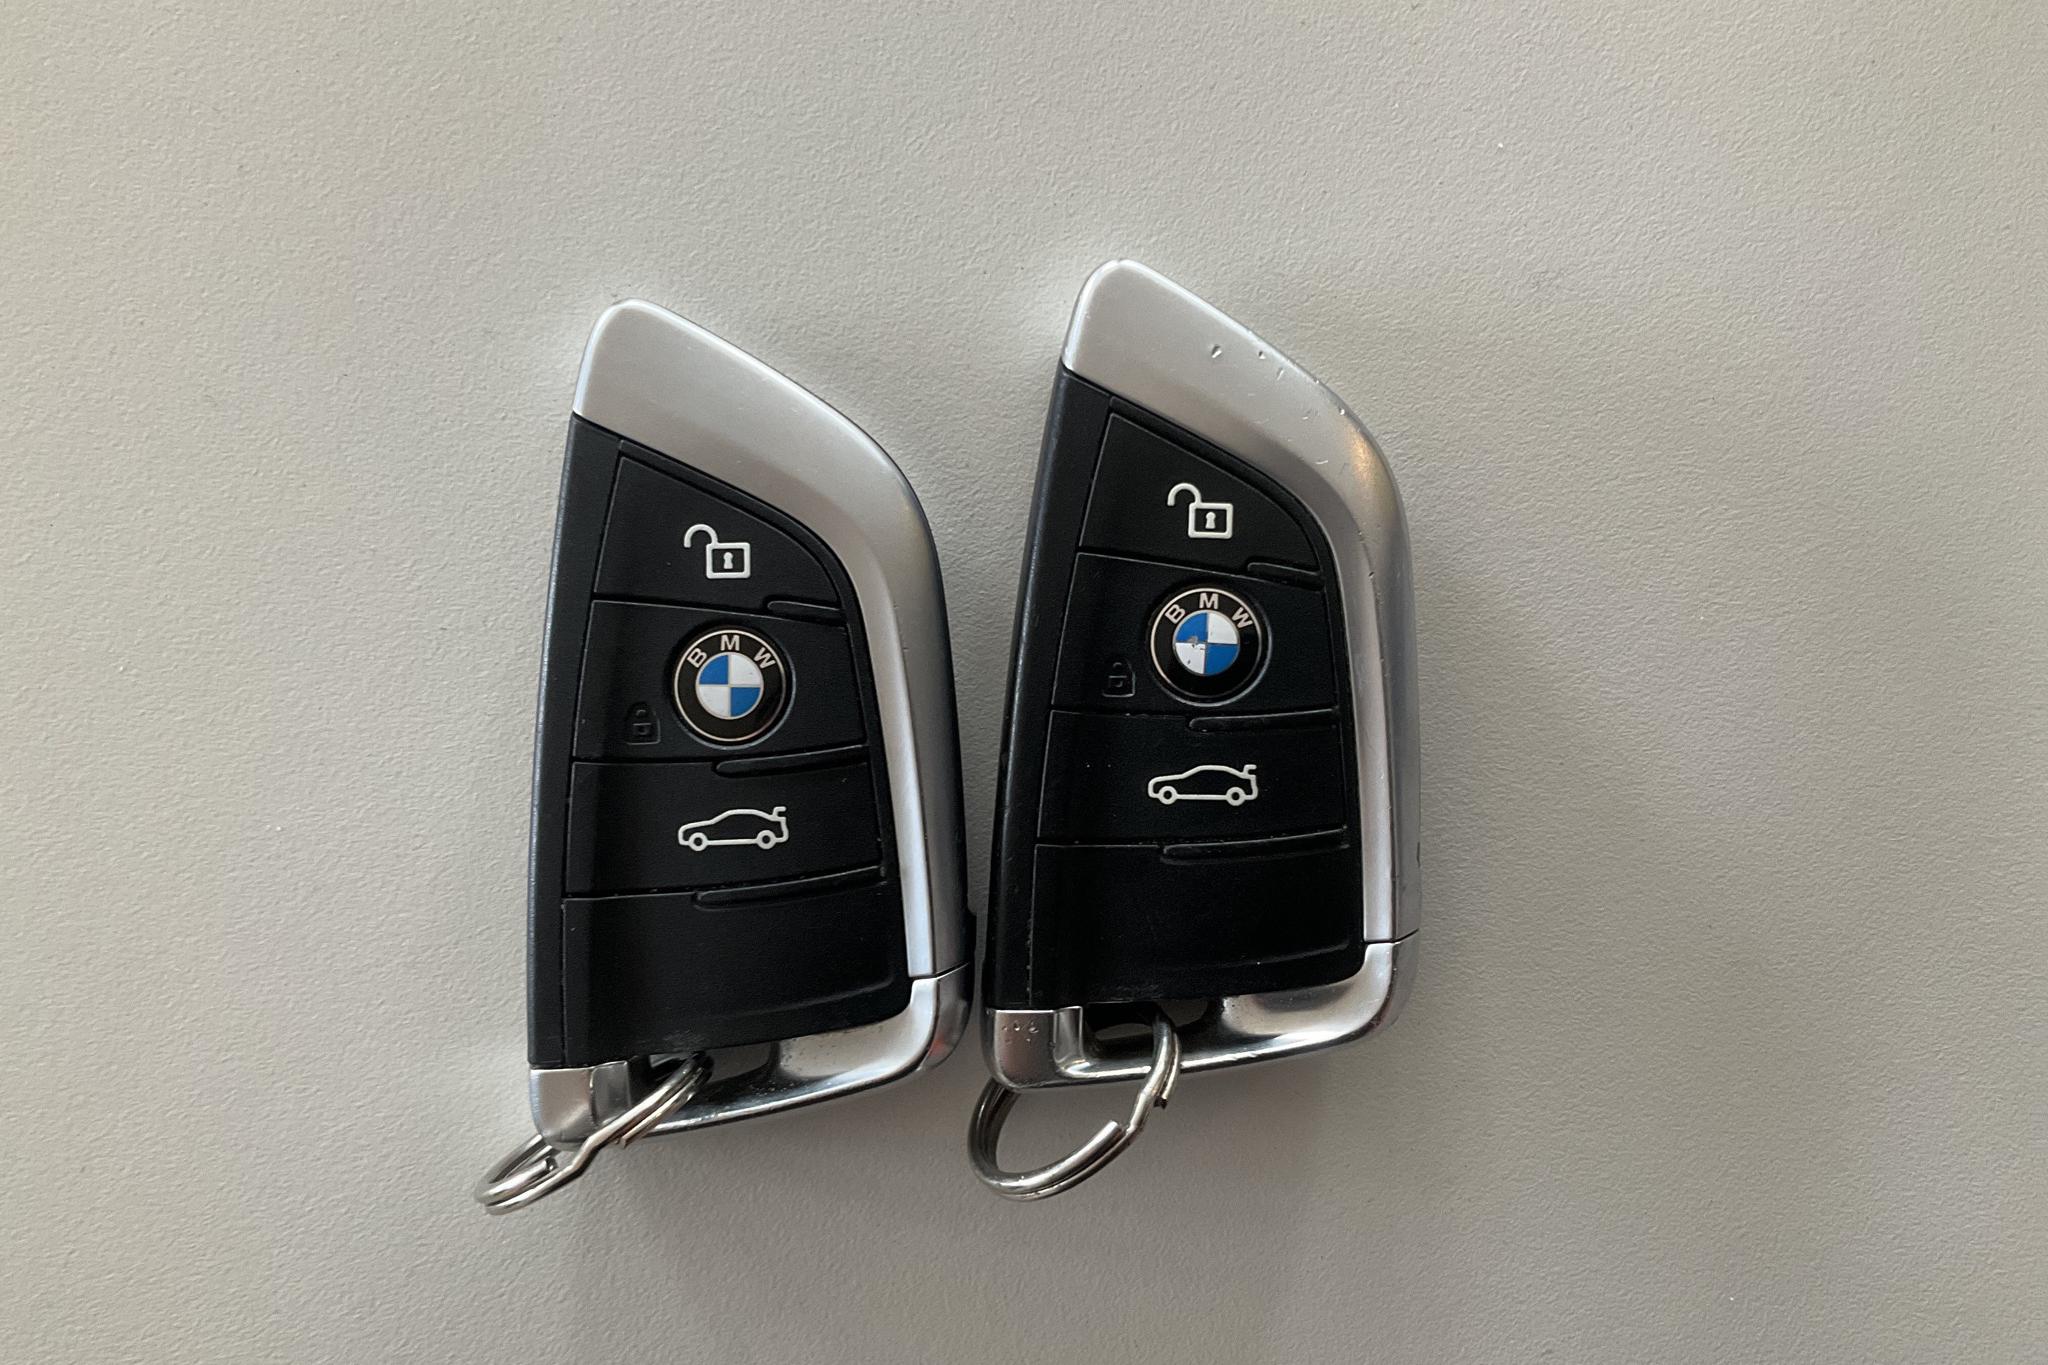 BMW X1 sDrive18d, F48 (150hk) - 7 532 mil - Automat - blå - 2016